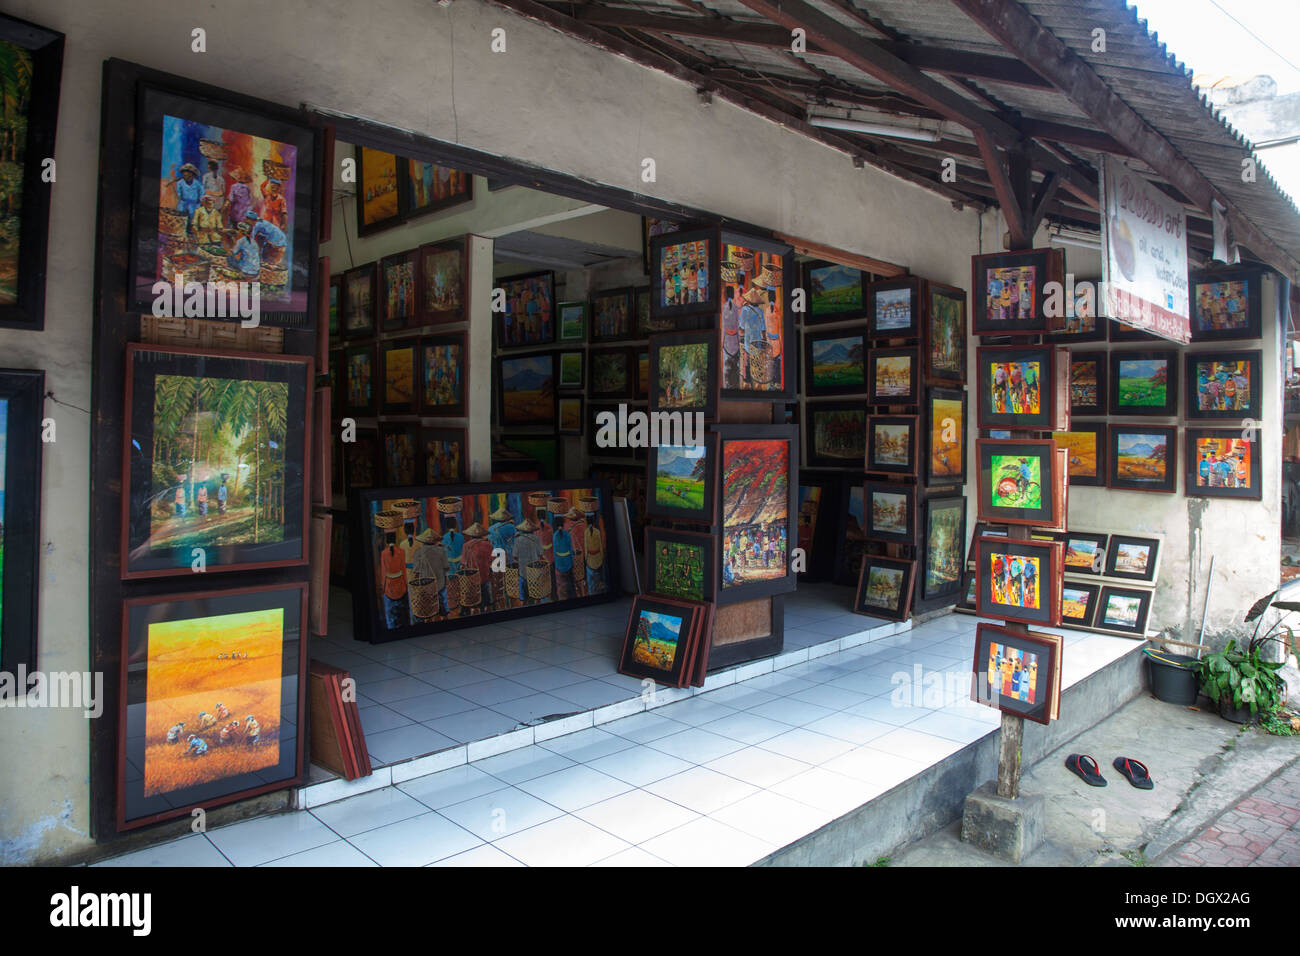 Kunst Gemälde Geschenke Wand verkaufen Ubud Bali Indonesien Öl kleine quadratische Themen Farbe bunte Geschenke Geschenke Souvenirs billige einfache s Stockfoto